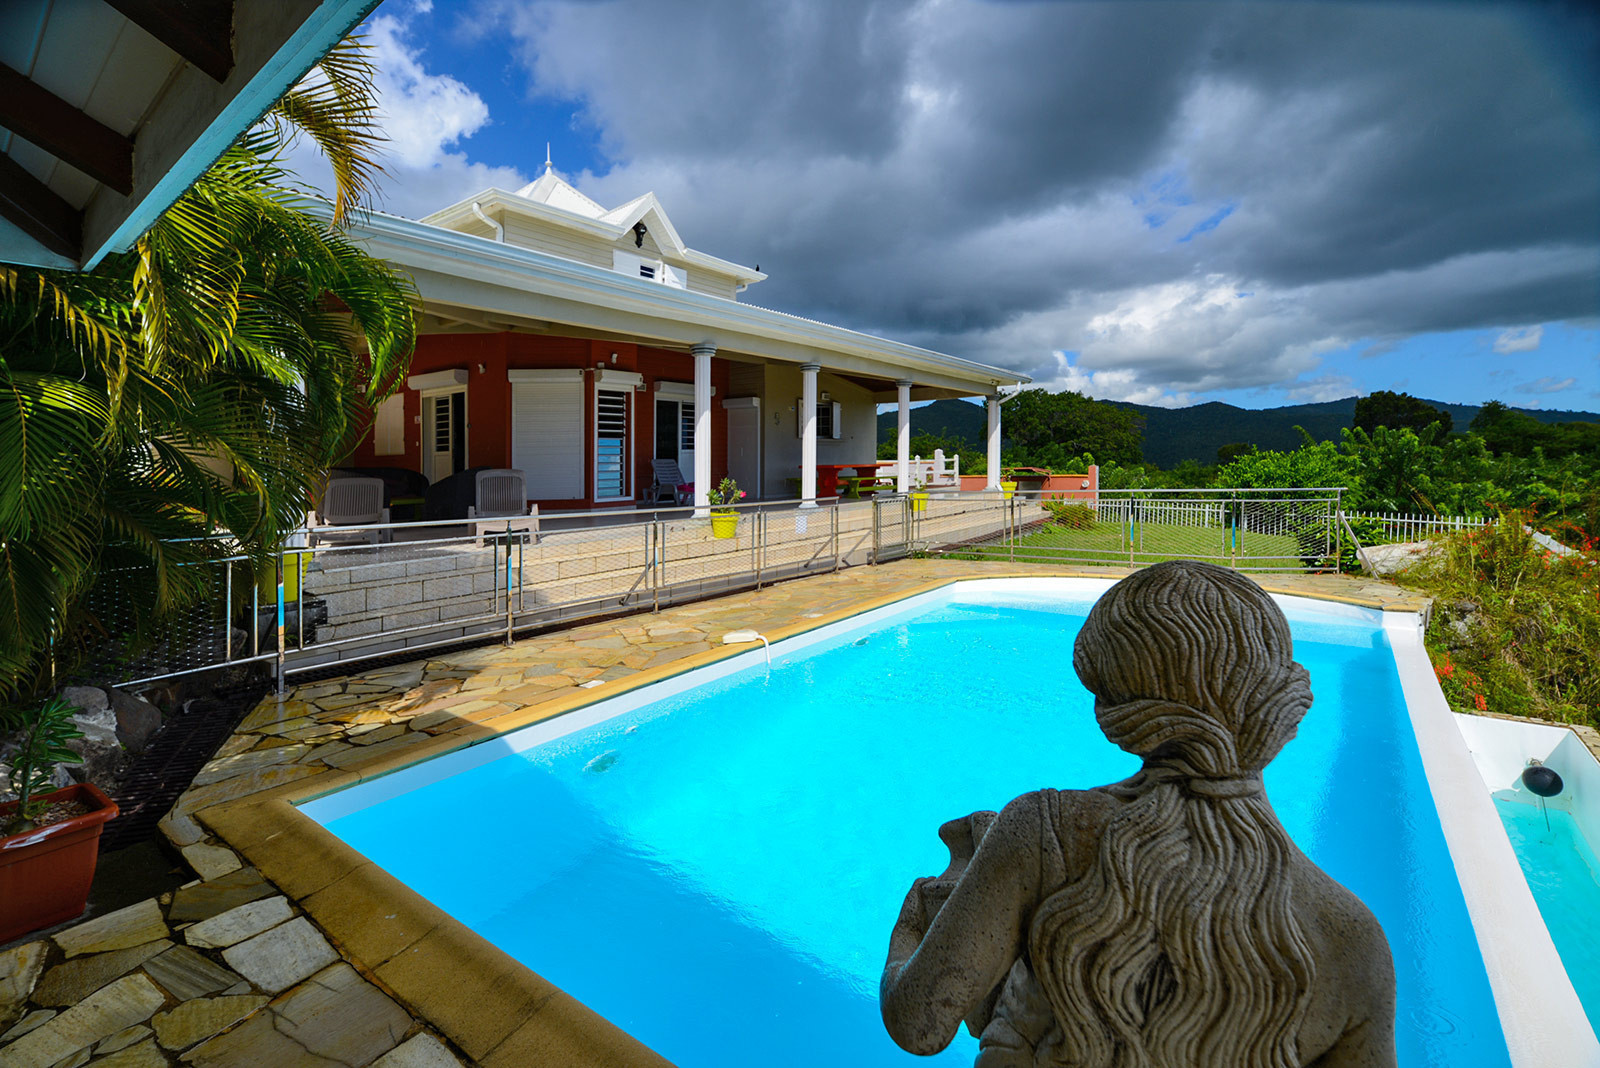 Villa NID d'AIGLE location Martinique le Diamant vue mer piscine 3 chambres - Une vue exceptionnelle